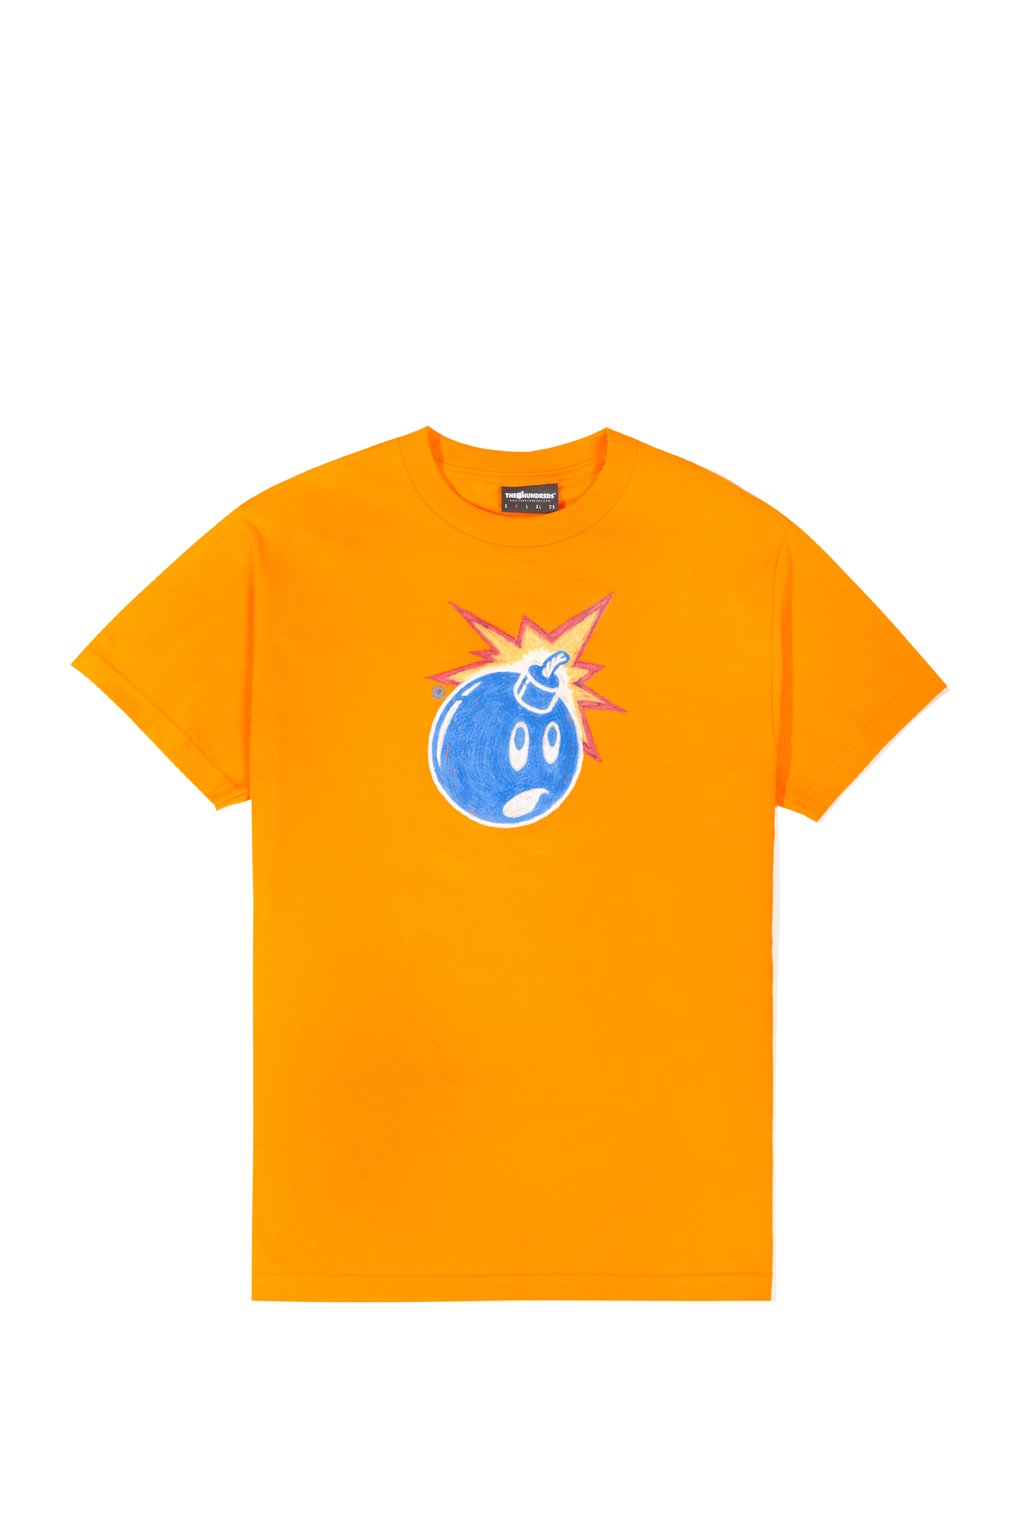 Claude Adam T-Shirt - Orange